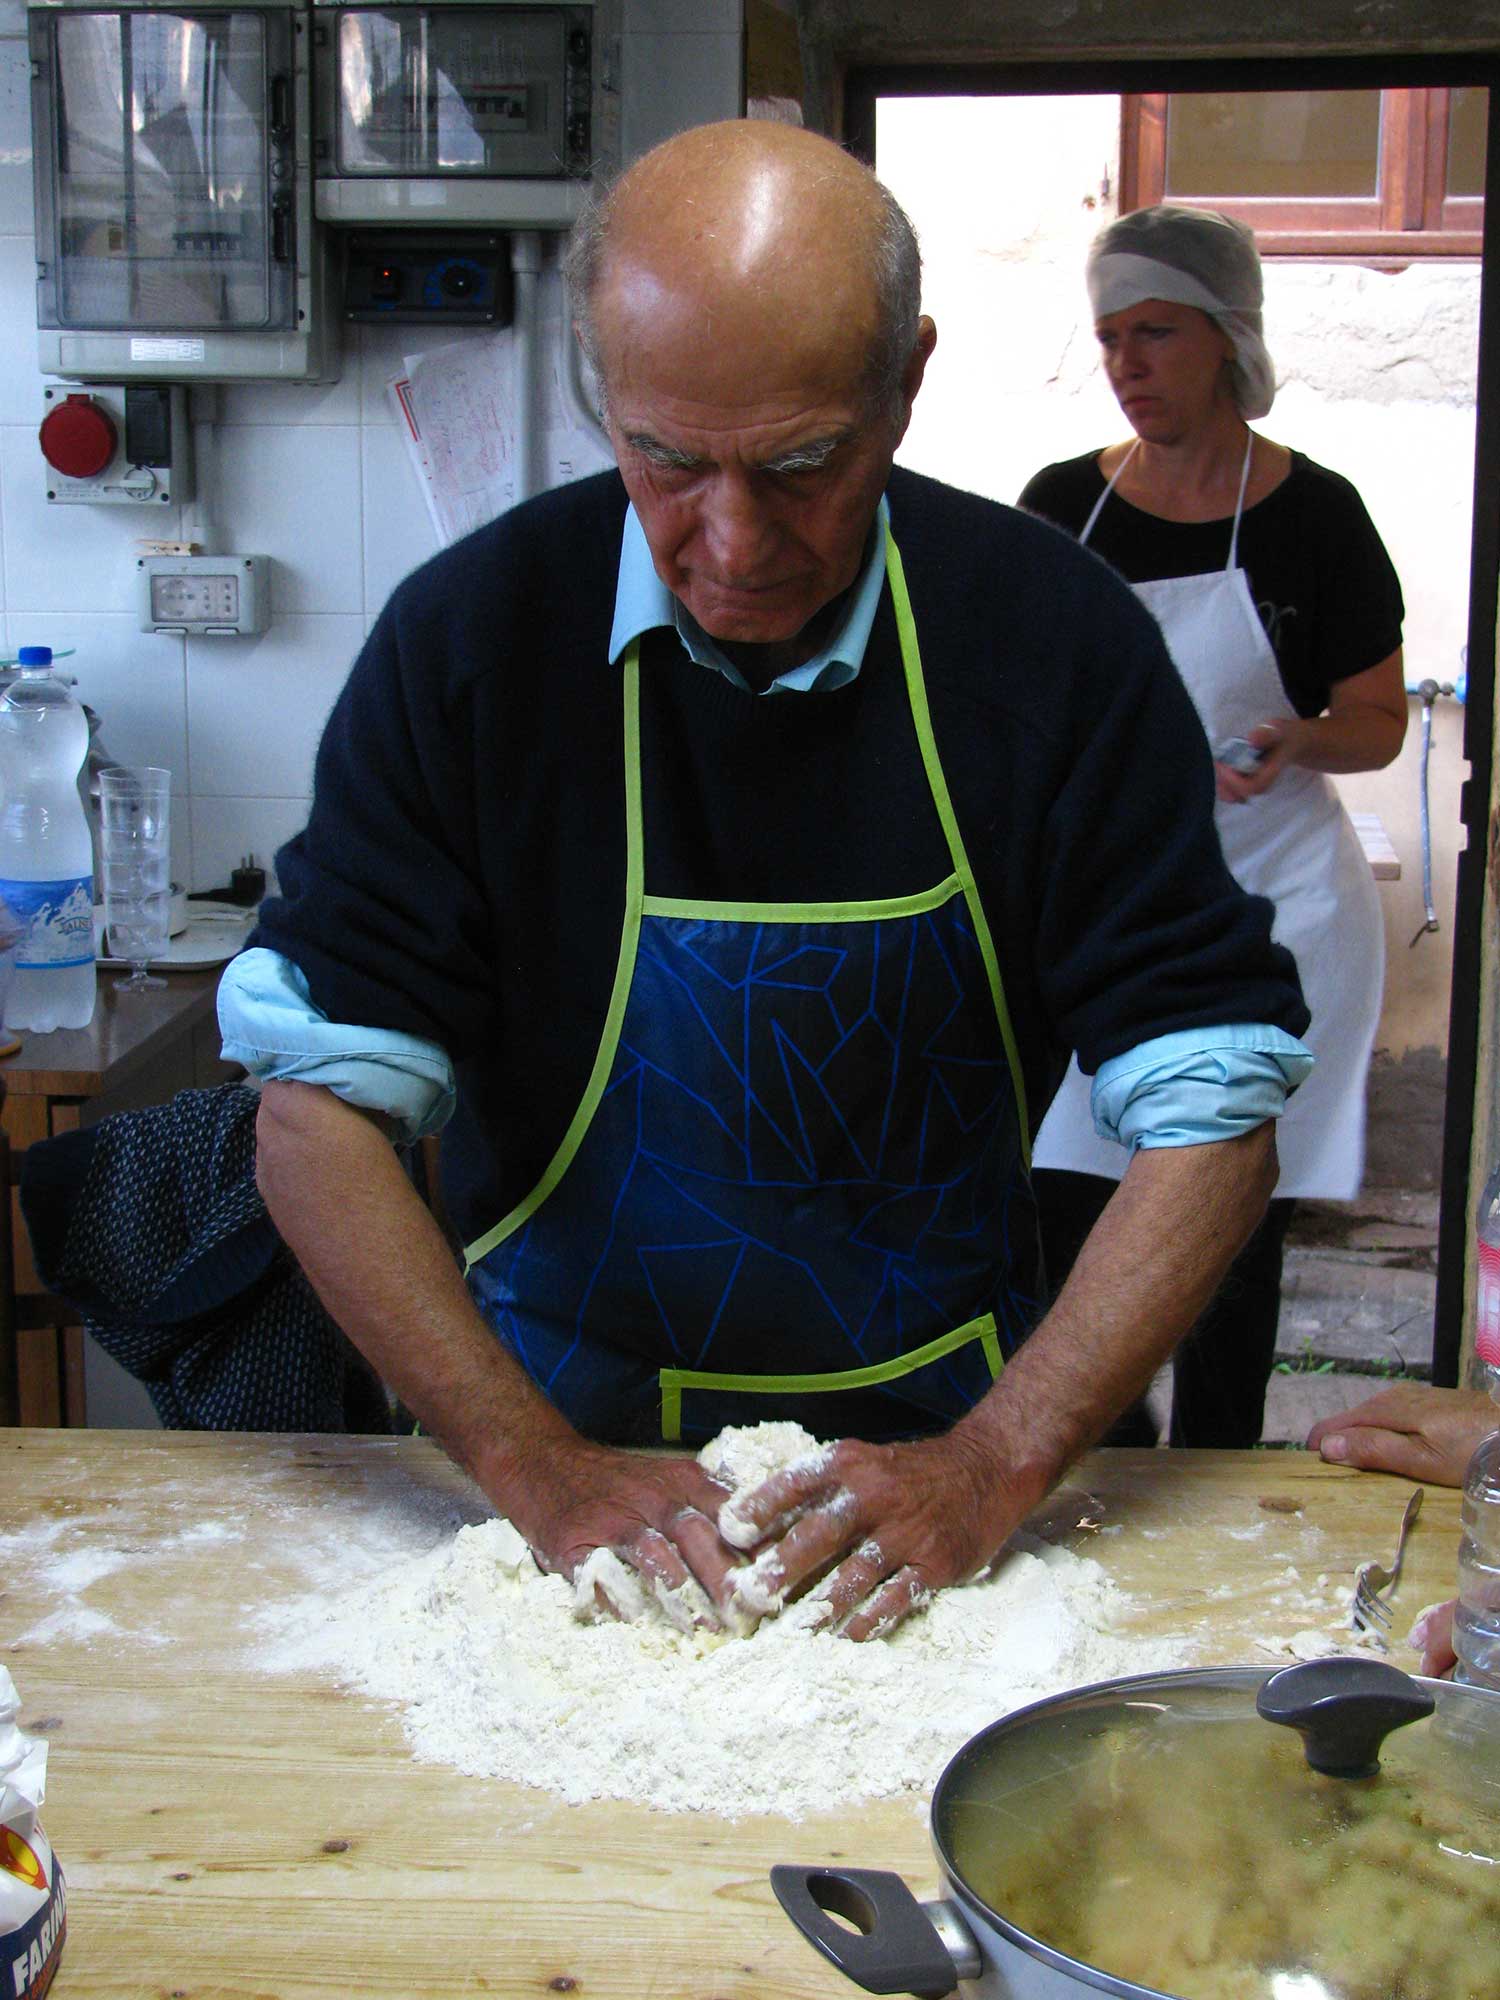 Mani in pasta per imparare la vera cucina italiana e toscana 